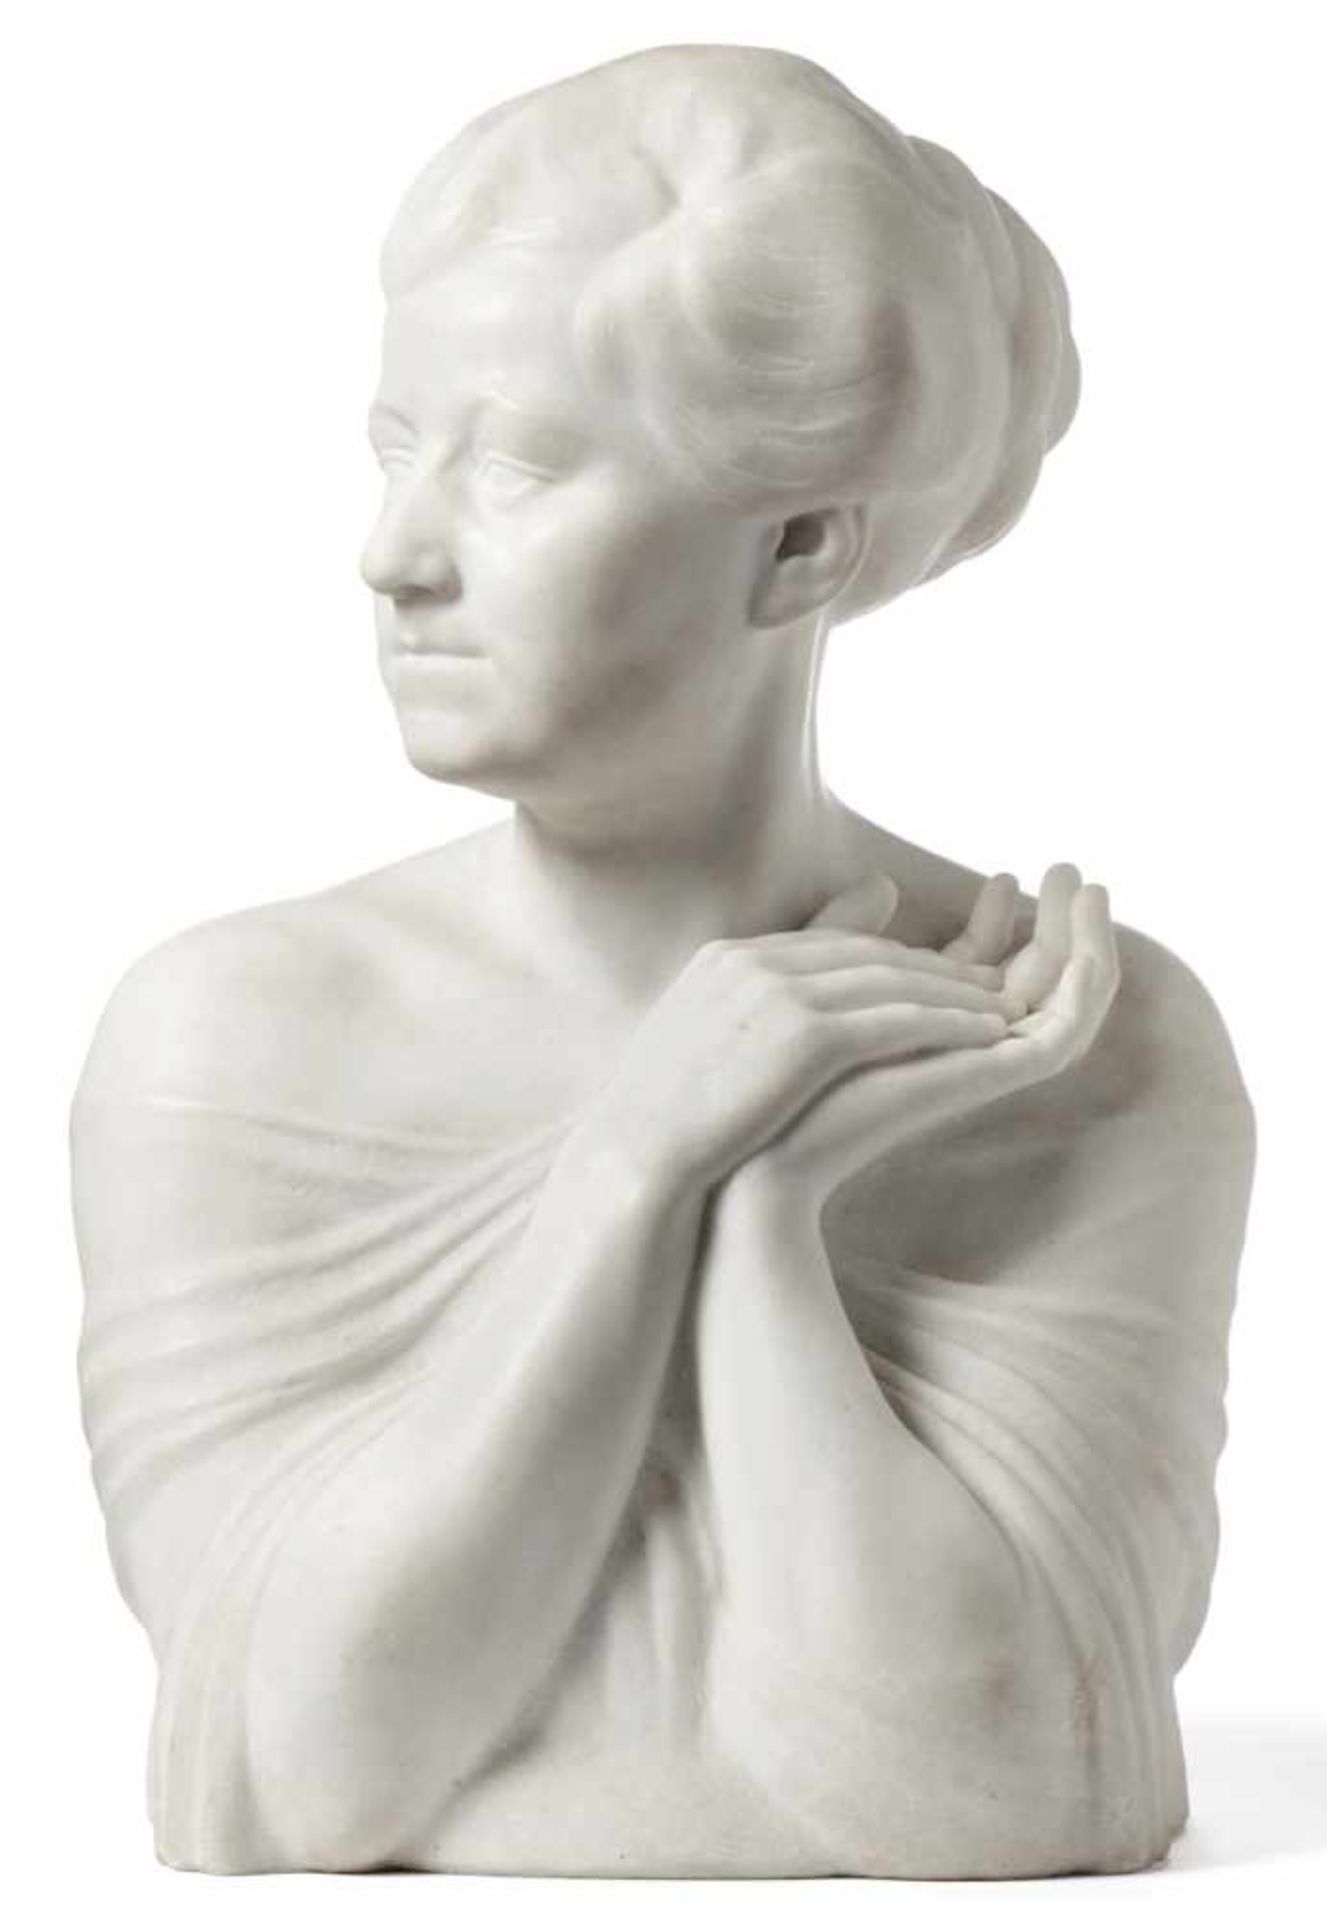 Bagdons, FriedrichBüste einer Frau(Kowarren 1878-1937 Dortmund) Vollrund gestaltete Büste einer Dame